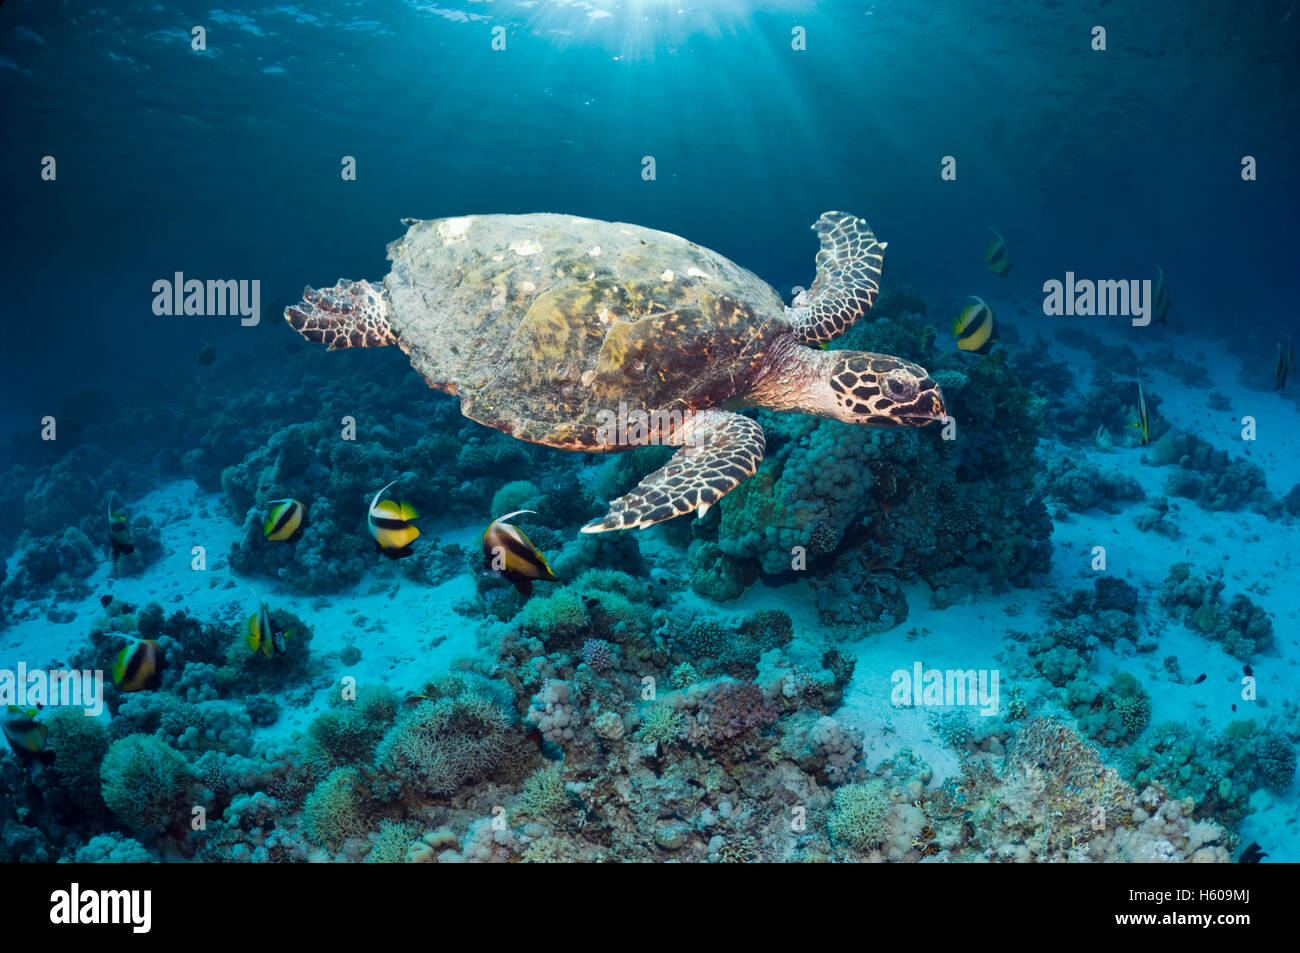 La tortuga carey (Eretmochelys imbricatta) nadando a lo largo de arrecifes de coral con ejes de luz solar. Egipto, el Mar Rojo. Foto de stock